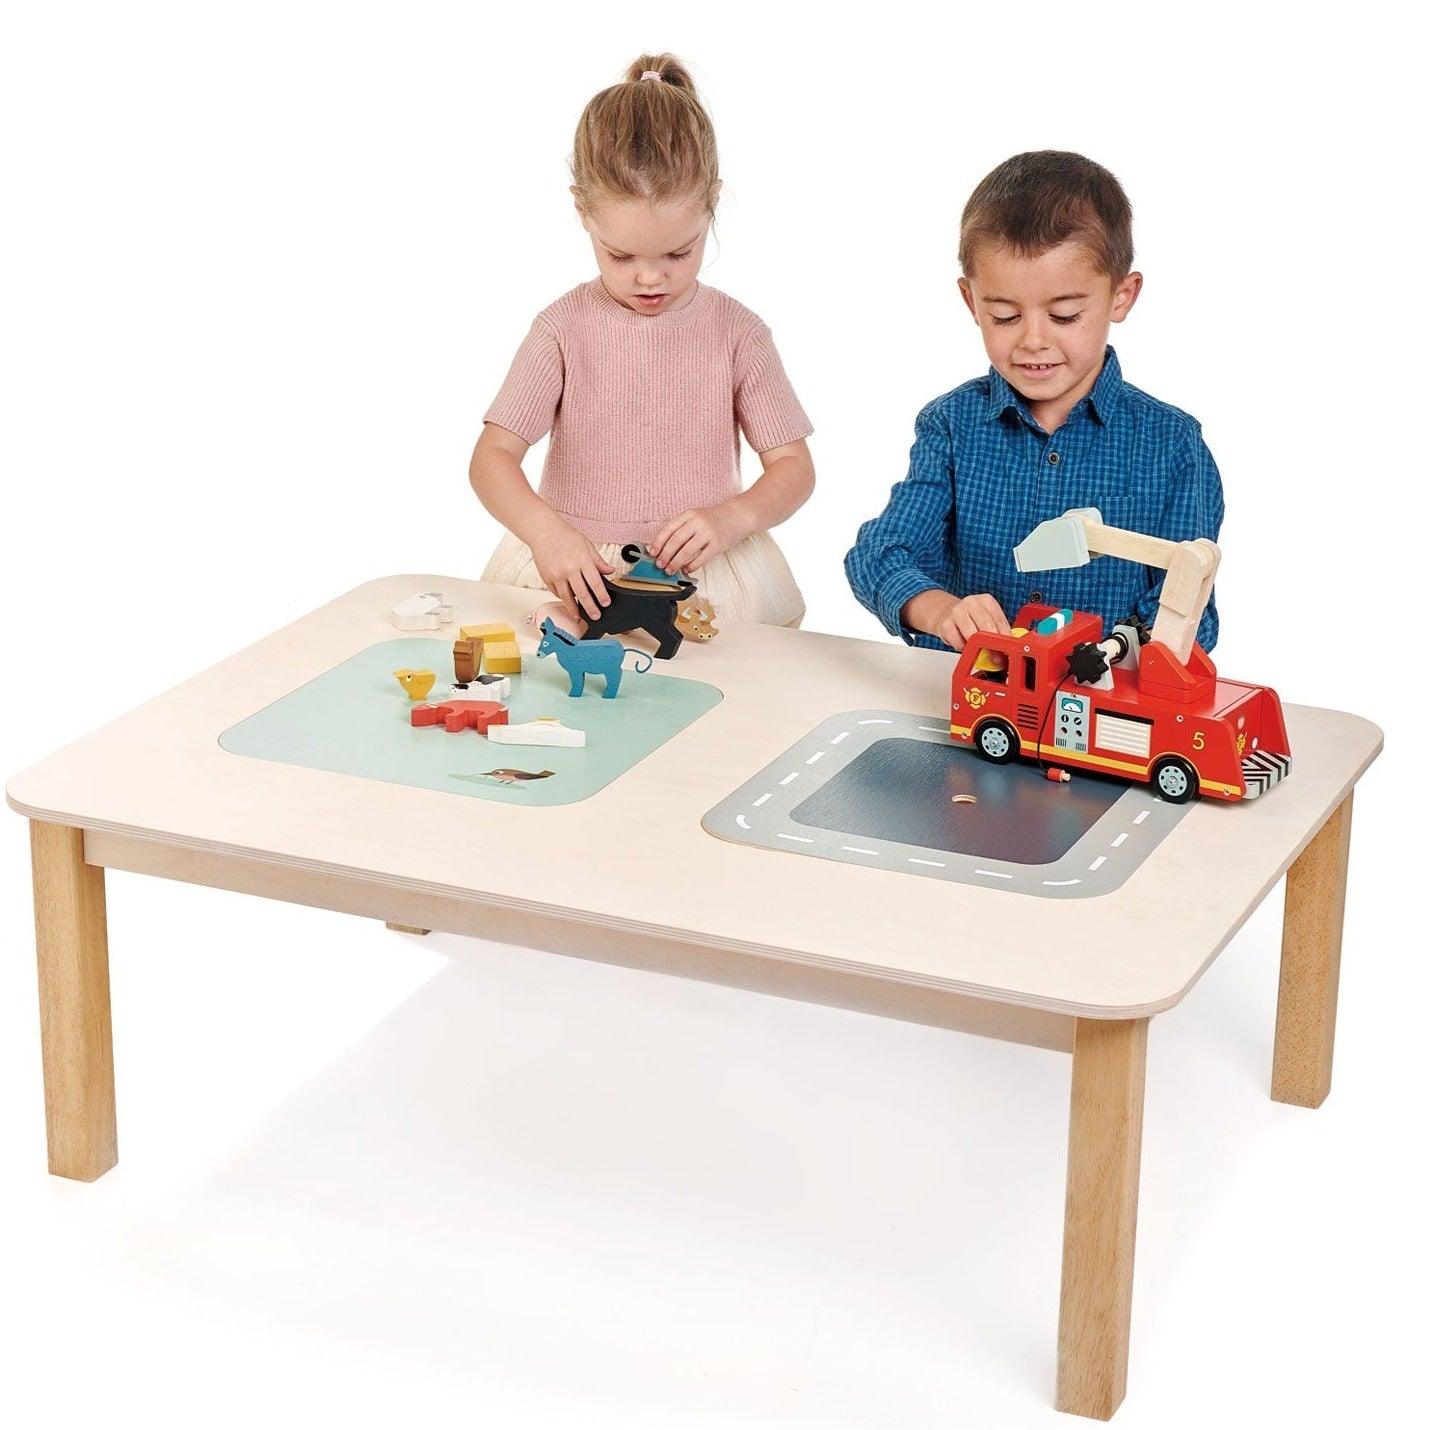 Tender Blattspielzeug: großer Tisch mit Doppelspeicherplay -Tisch